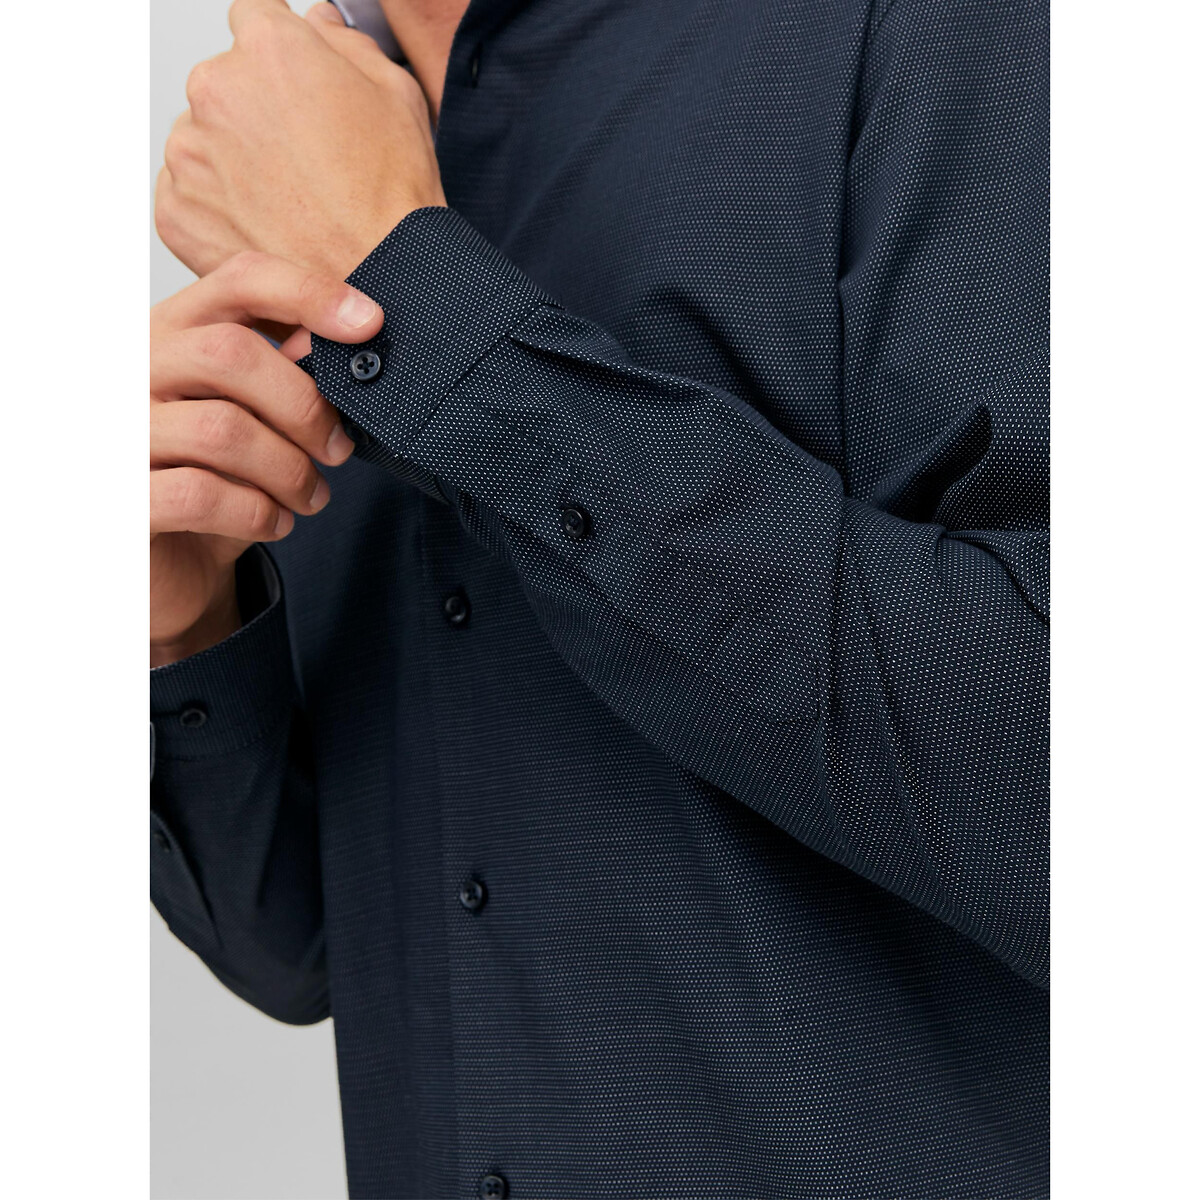 Рубашка Слим из ткани стрейч L синий LaRedoute, размер L - фото 4